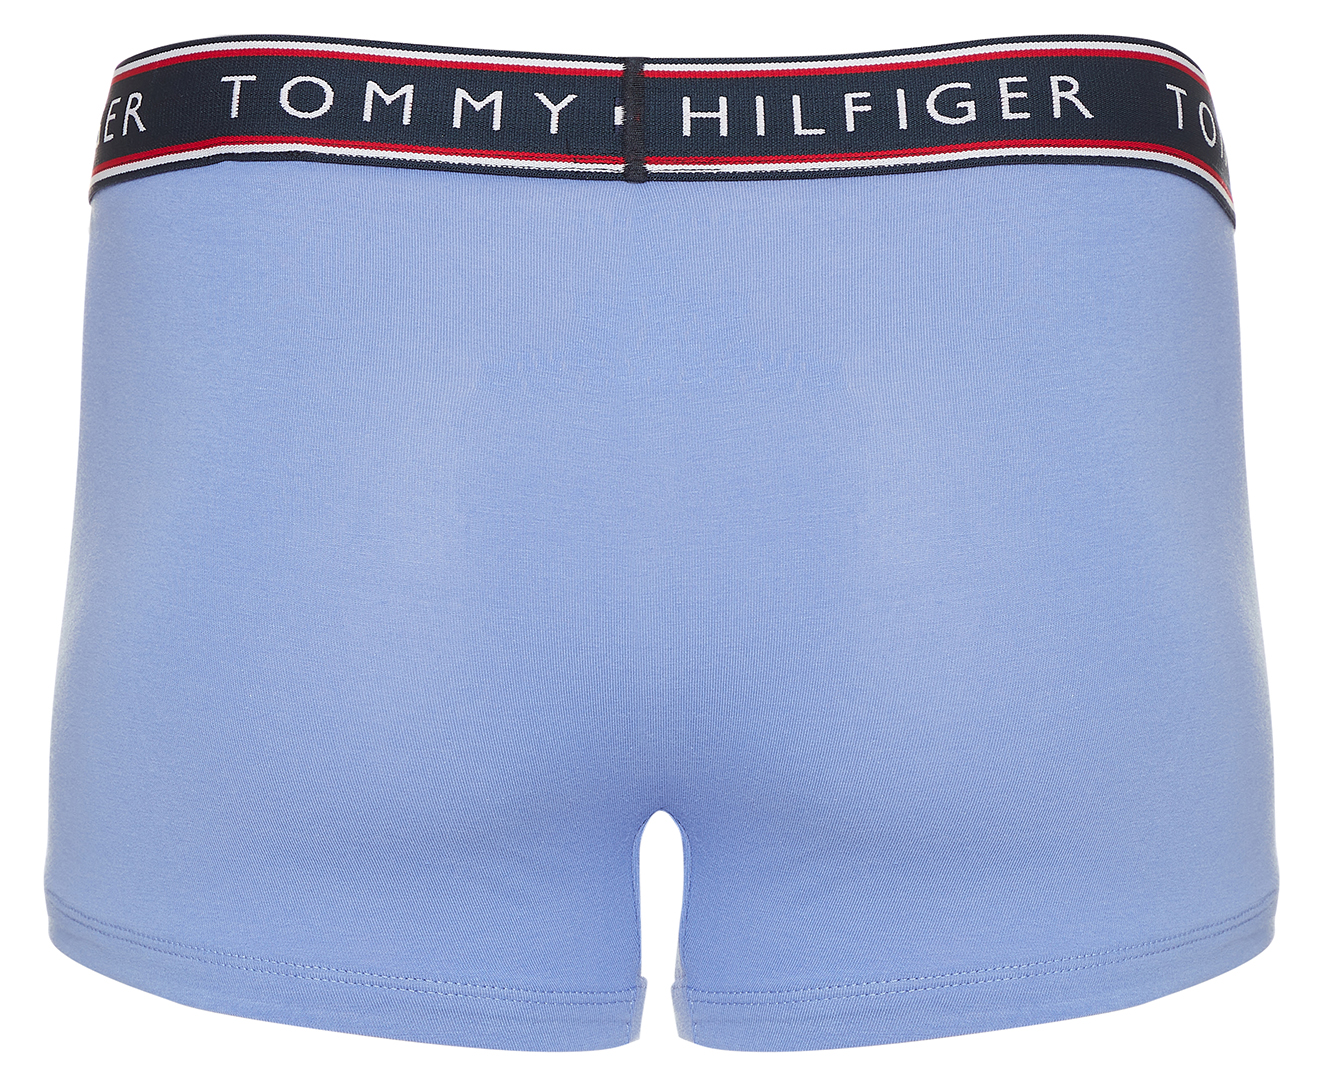 Tommy Hilfiger Men's Cotton Stretch Trunks 3-Pack - Blue Velvet